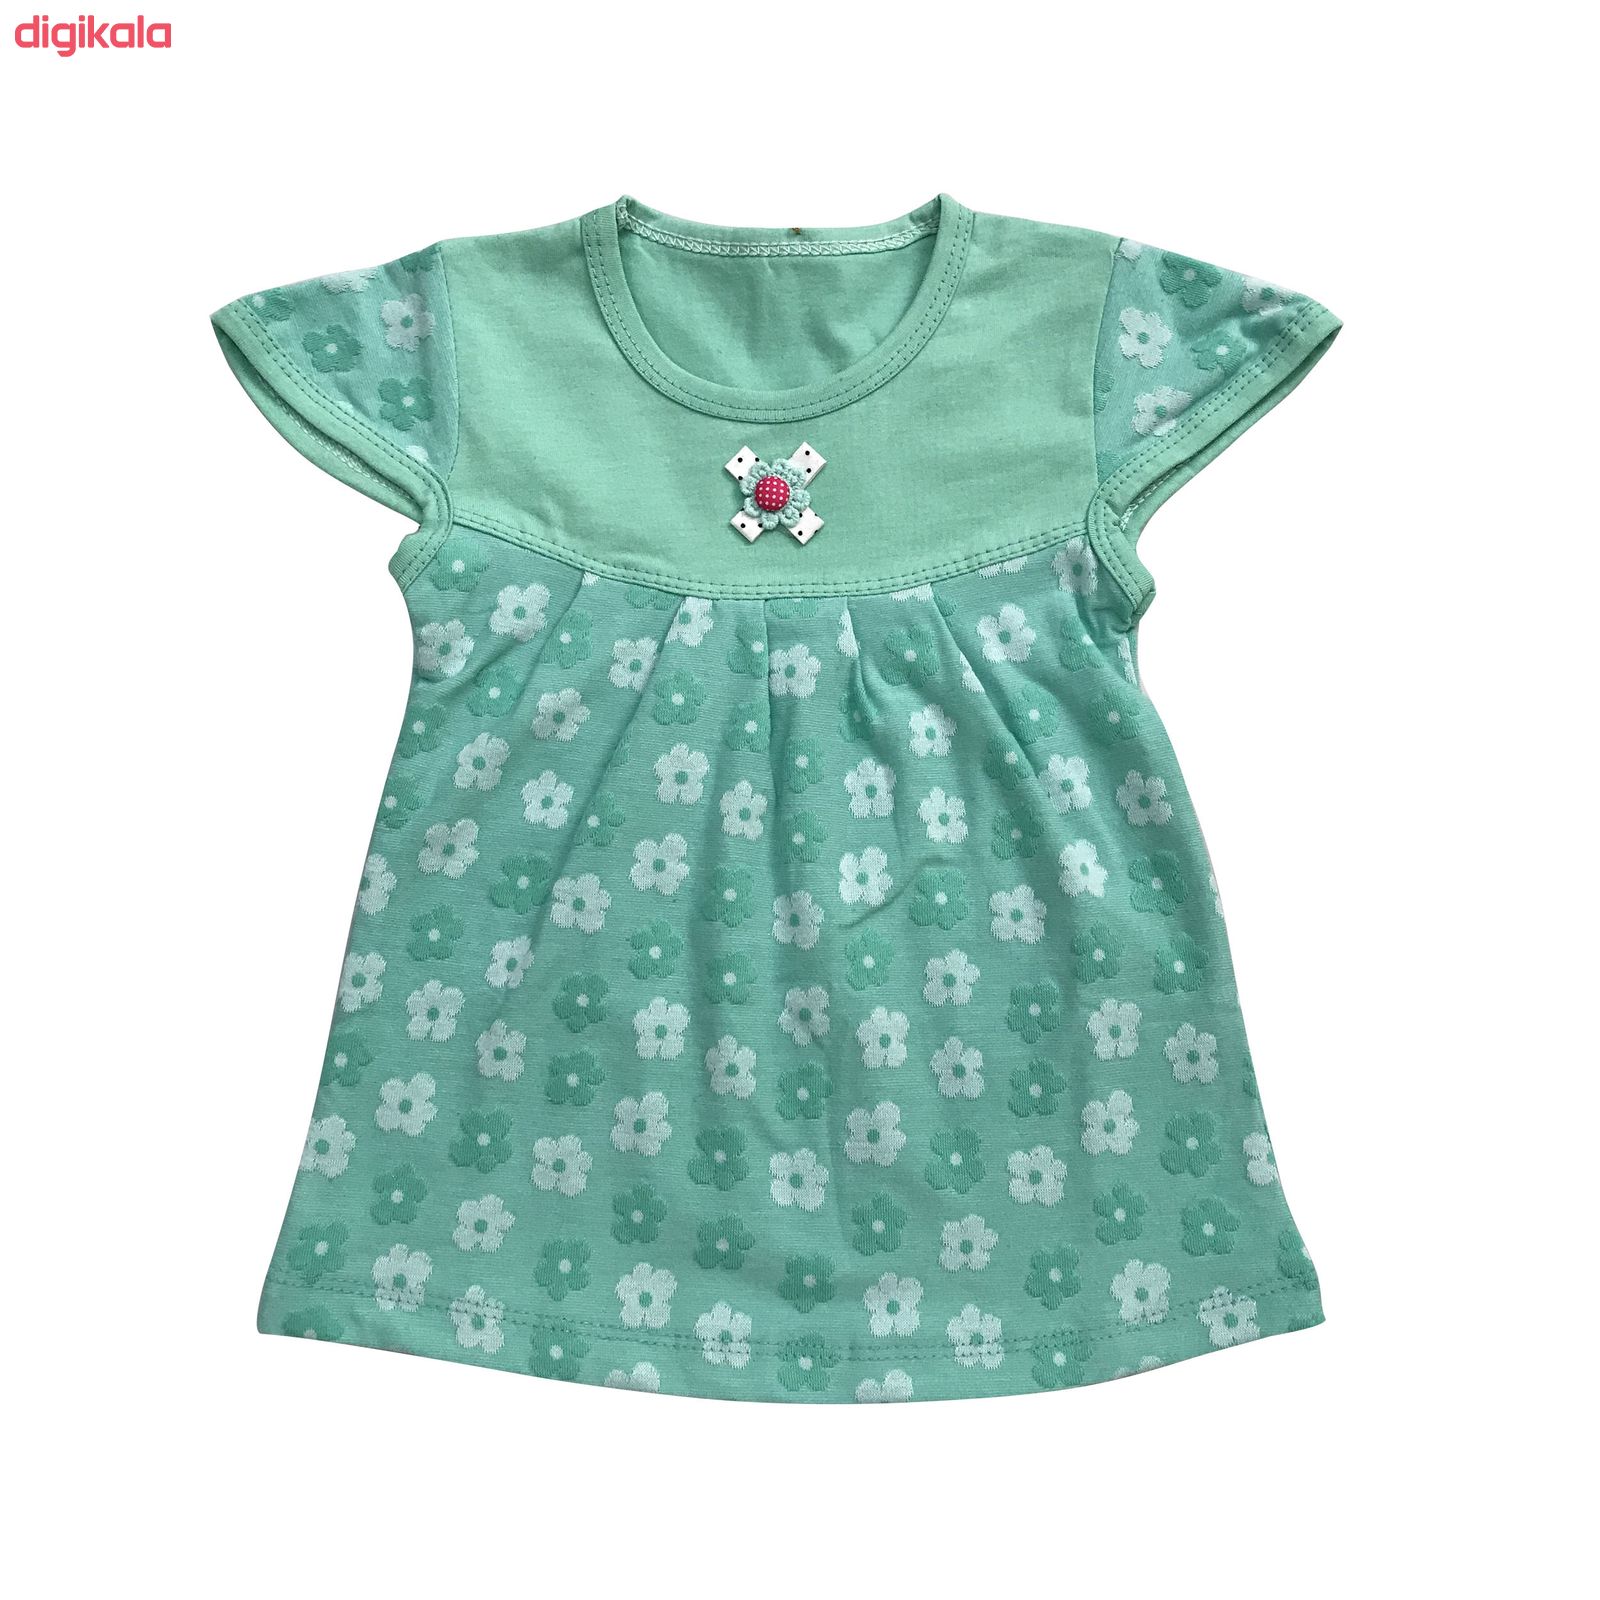  تی شرت و شلوارک دخترانه طرح گل کد 370 رنگ سبز